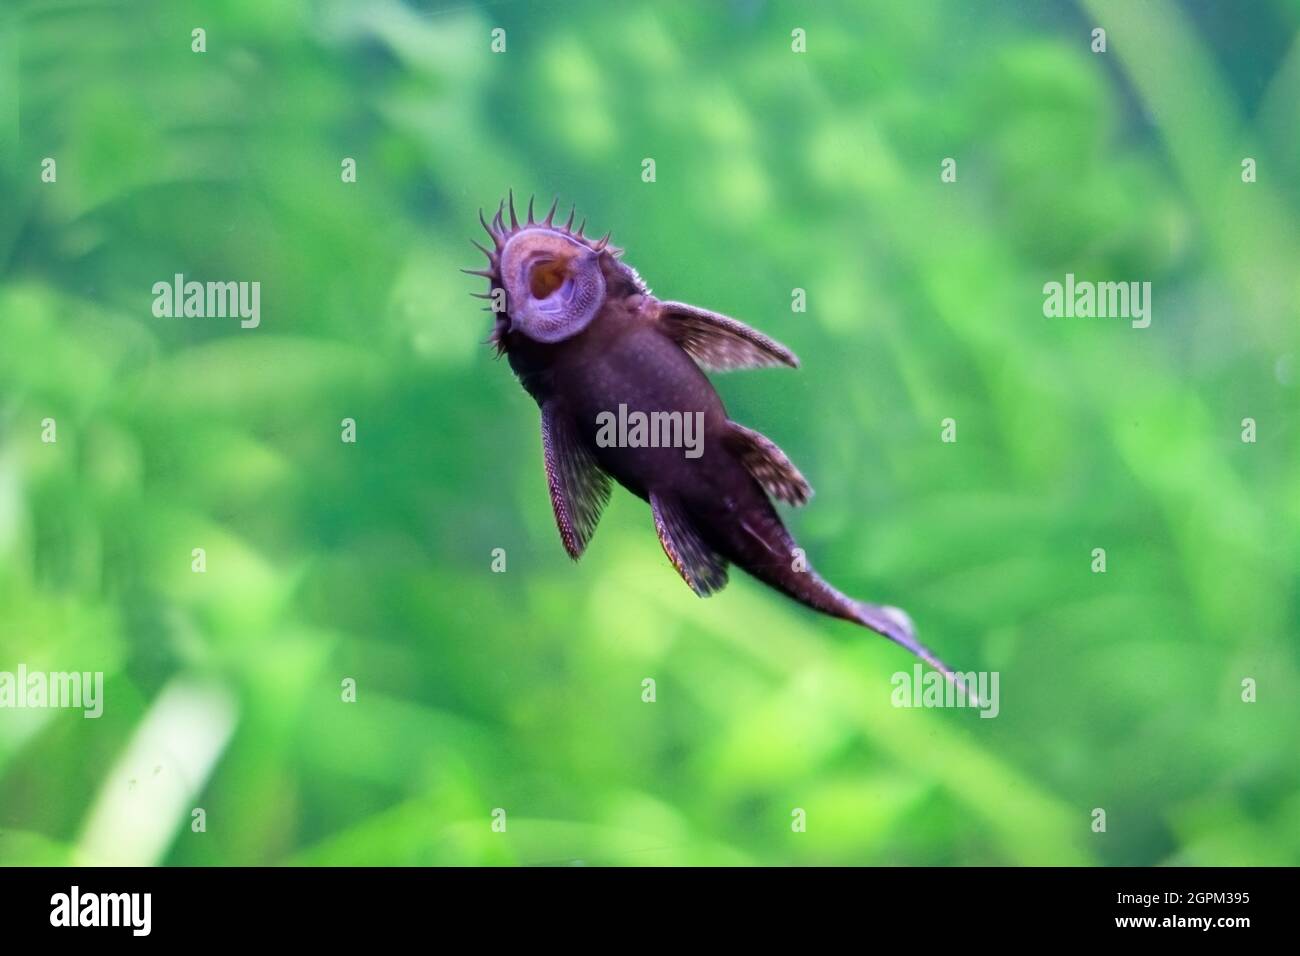 Succhiatore di pesce. L'immagine mostra la bocca di un pesce succhiatore. Foto Stock